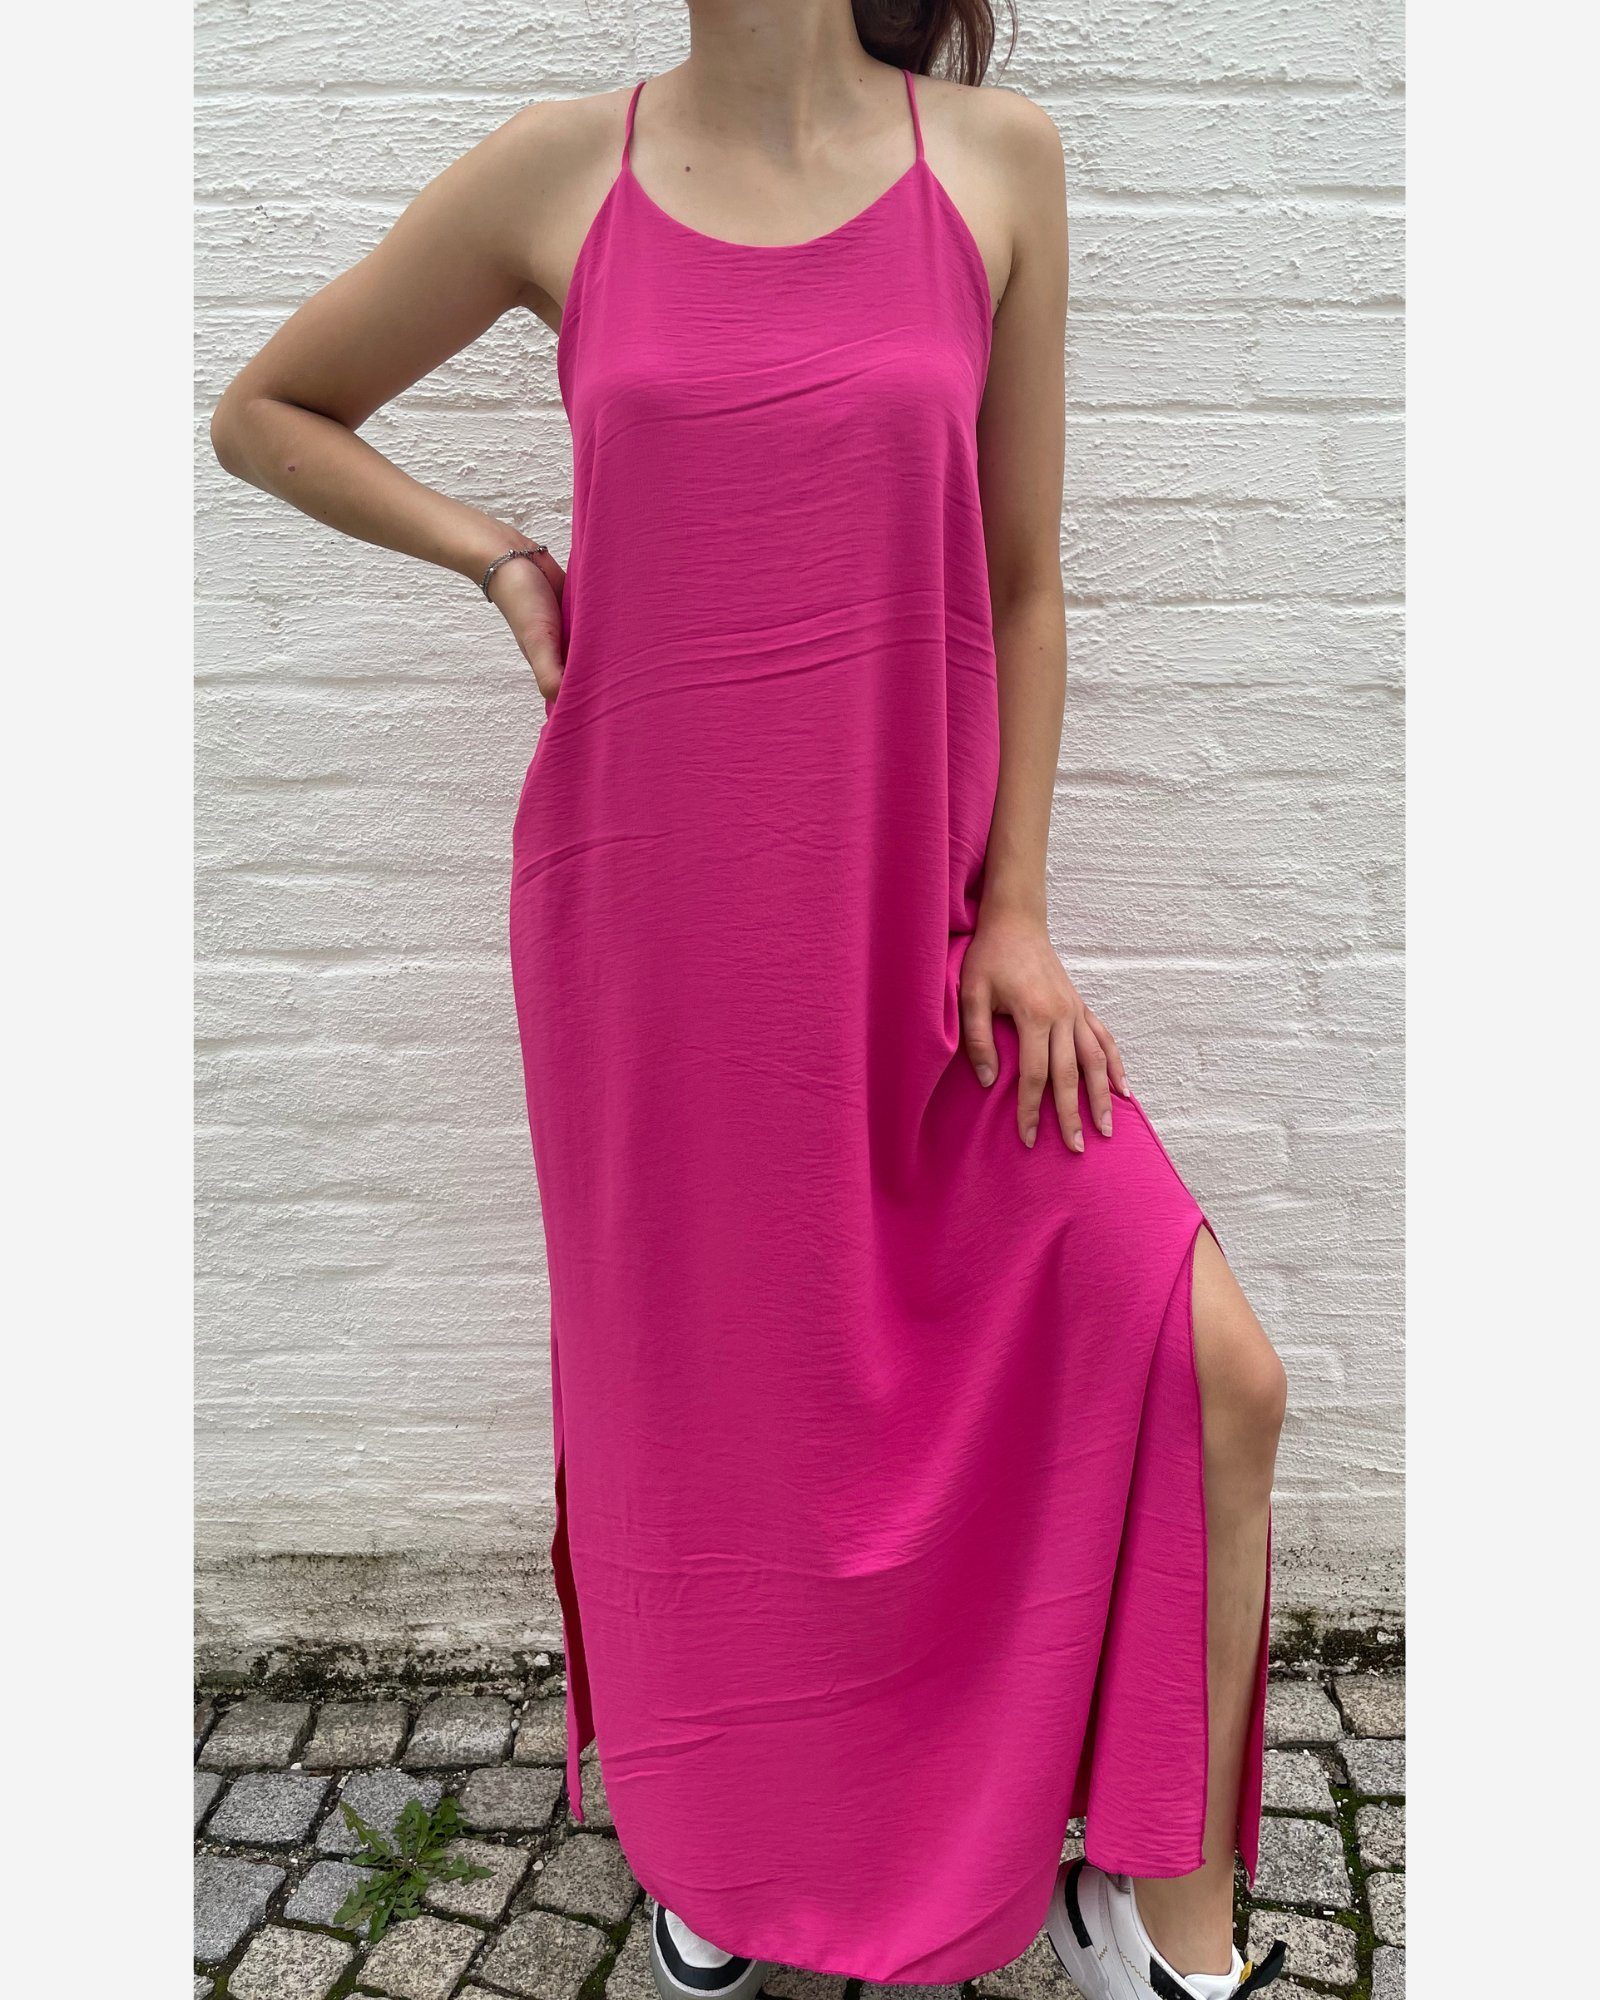 ITALY VIBES Midikleid MONA - langes Kleid - elegantes Sommerkleid mit Schlitz - ONE SIZE passt hier Gr. XS - XL pink